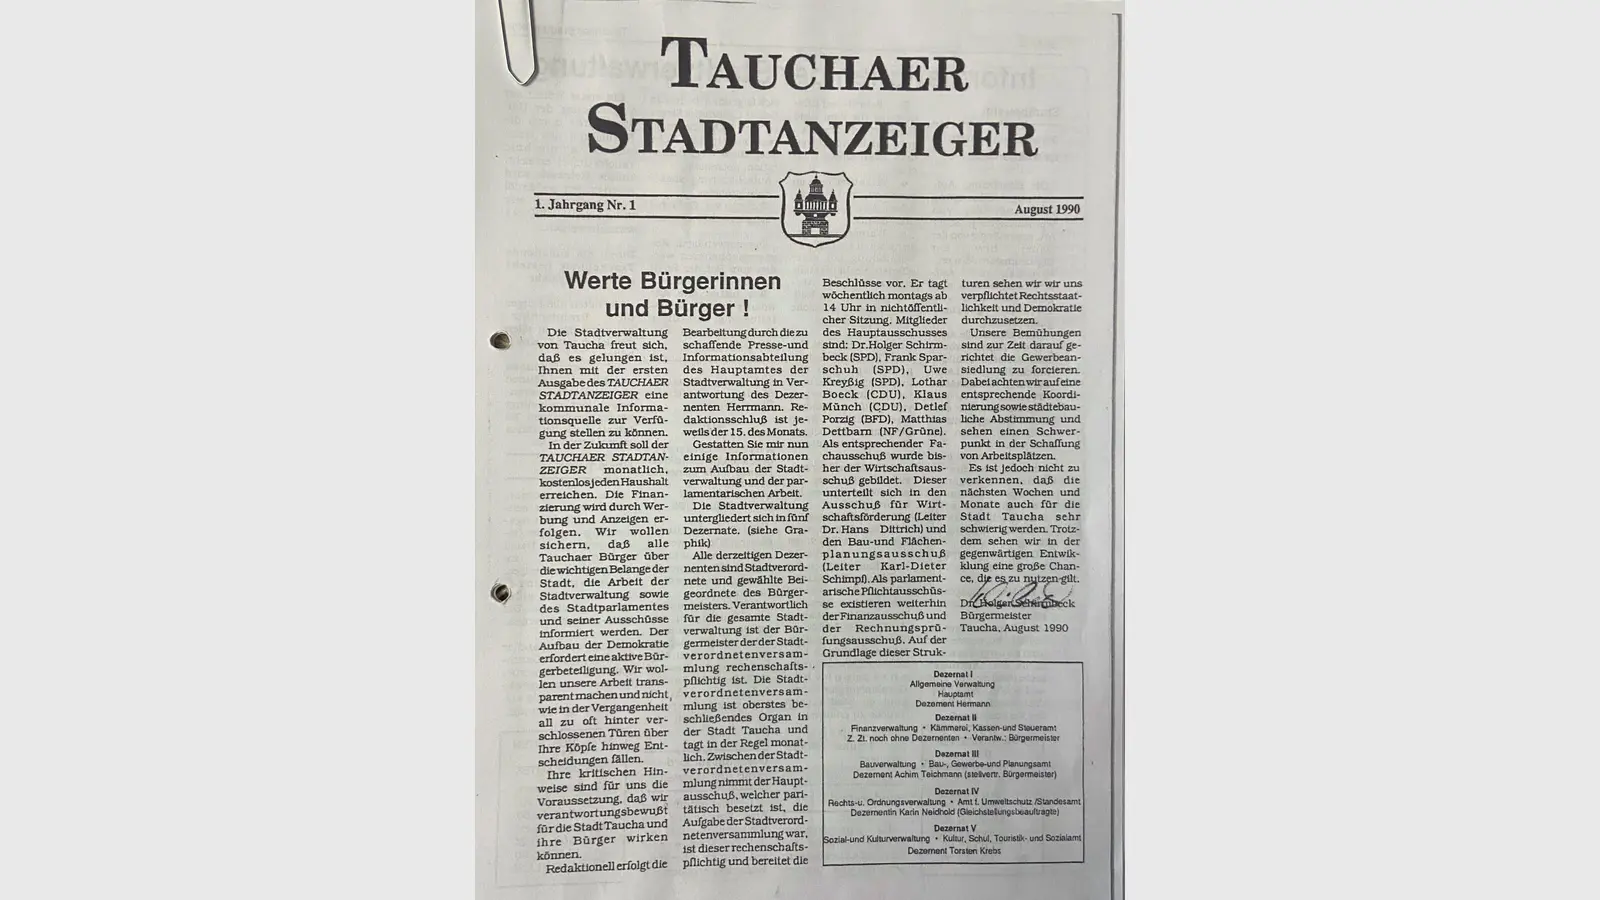 Auch den ersten Stadtanzeiger aus dem Jahr 1990 hat Thomas Kreyßig noch. (Foto: taucha-kompakt.de)